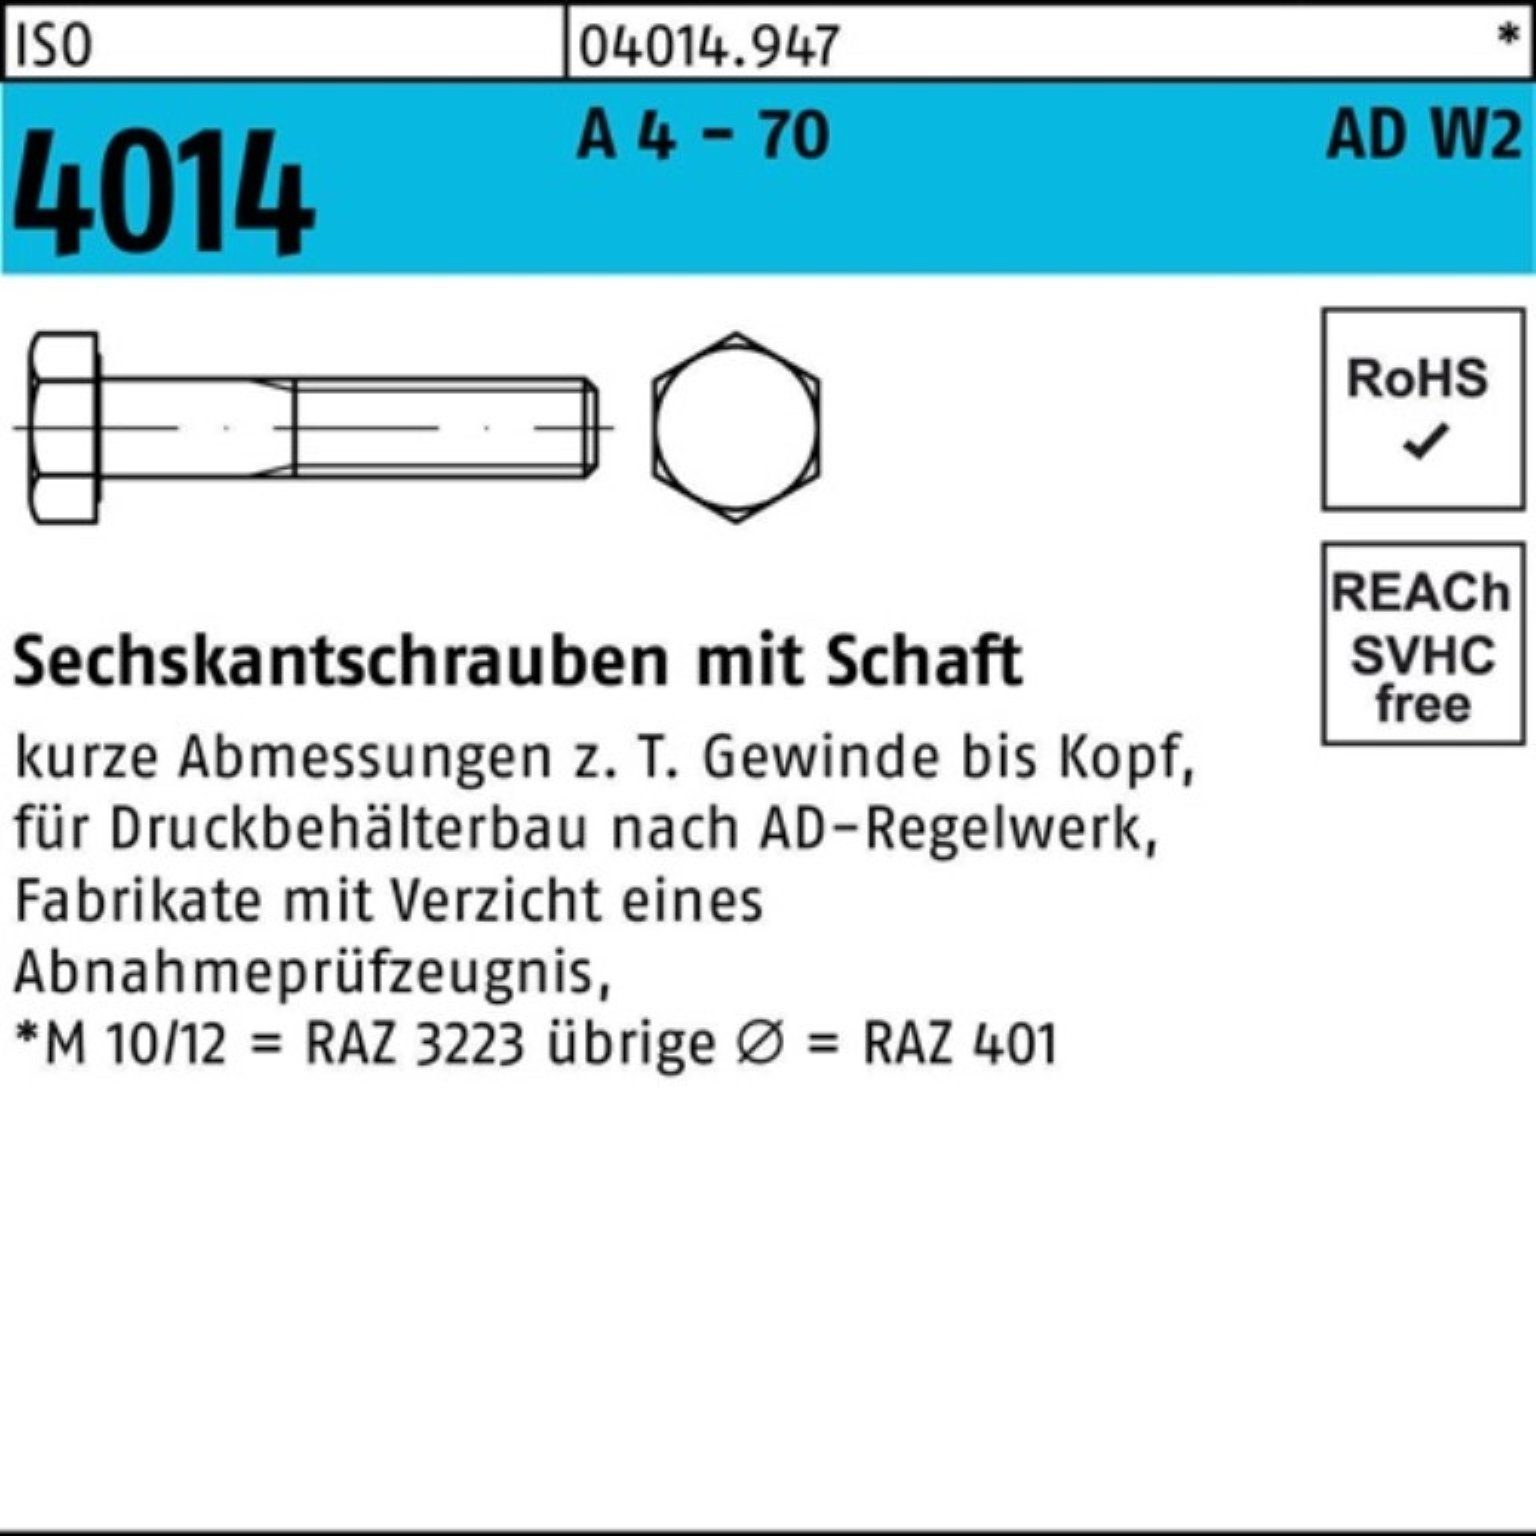 Bufab Sechskantschraube 100er Pack Sechskantschraube ISO 4014 Schaft M12x 70 A 4 - 70 AD-W2 50